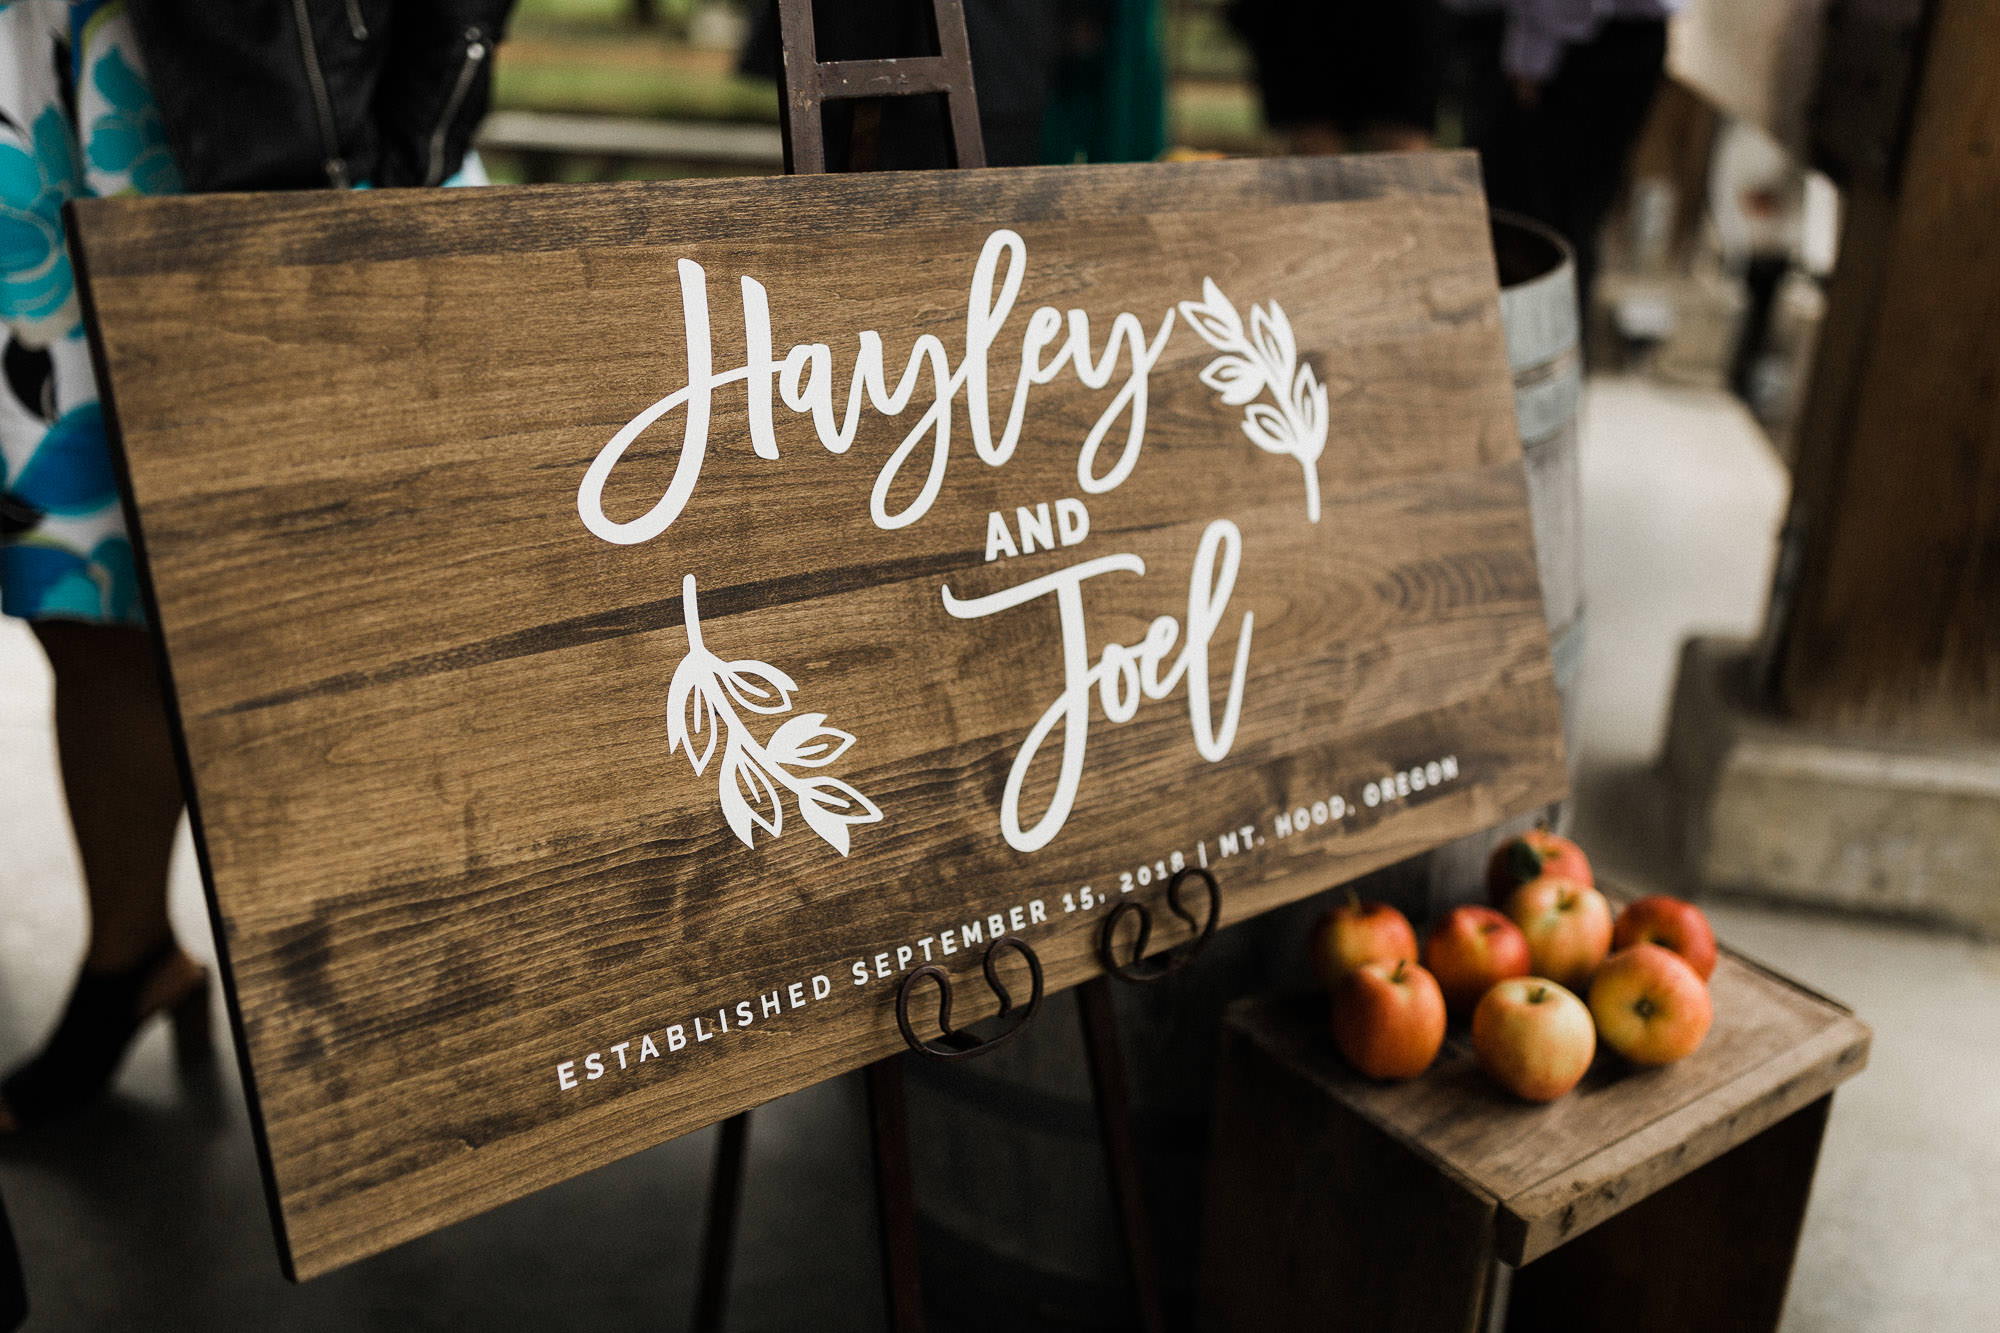 A sign reading "Hayley and Joel, Established September 15, 2018 | Mt Hood, Oregon"